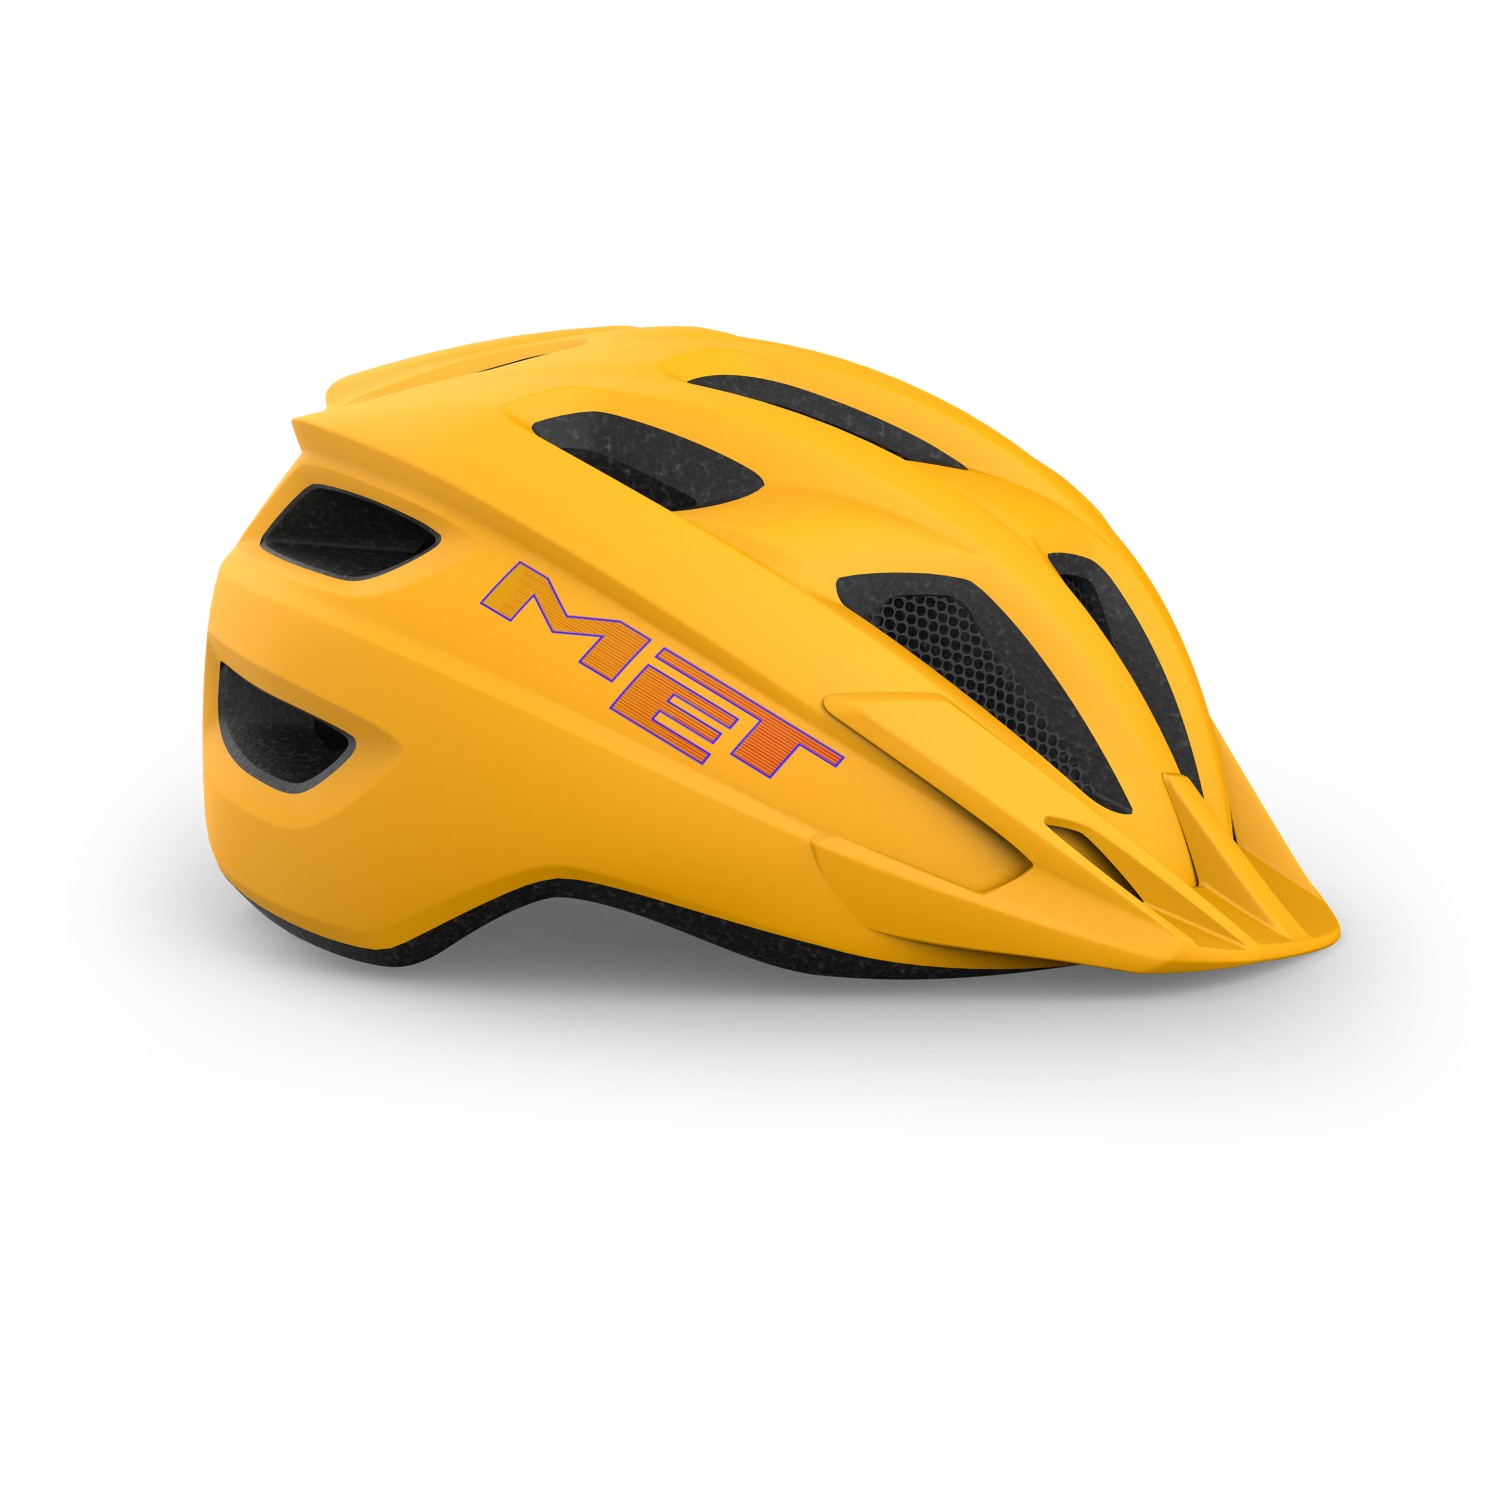 Велосипедный шлем Met Kid's Crackerjack, оранжевый